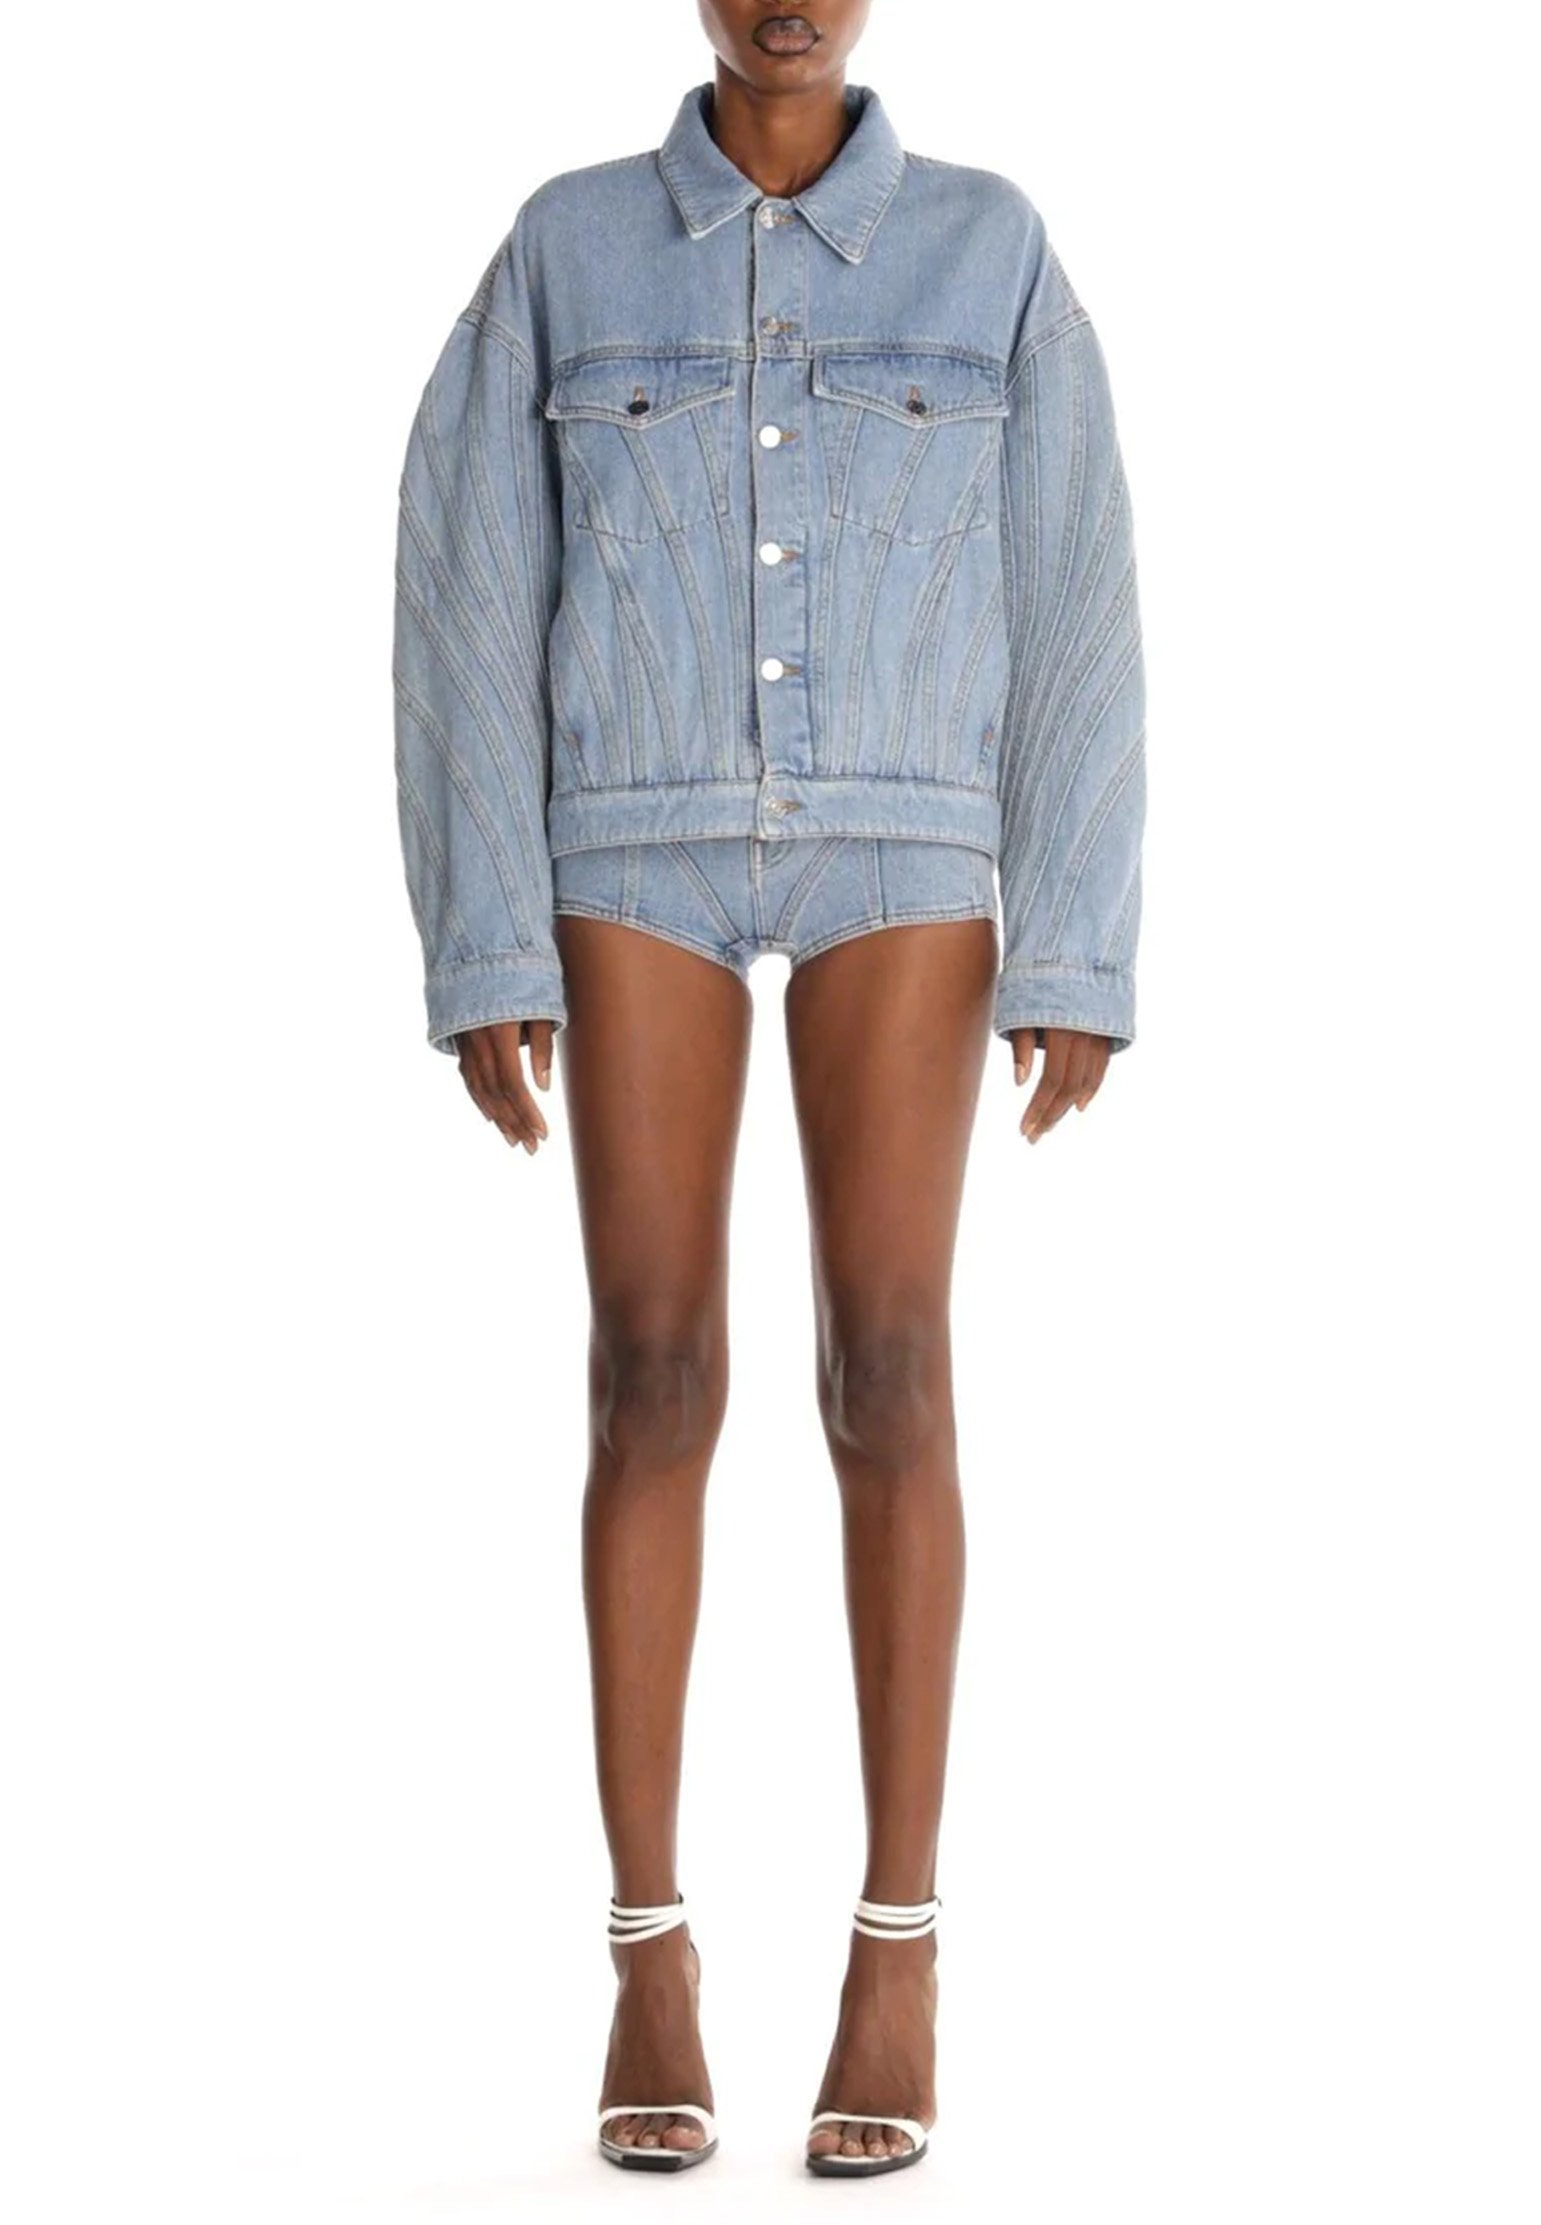 Shorts MUGLER Color: light blue (Code: 4038) in online store Allure